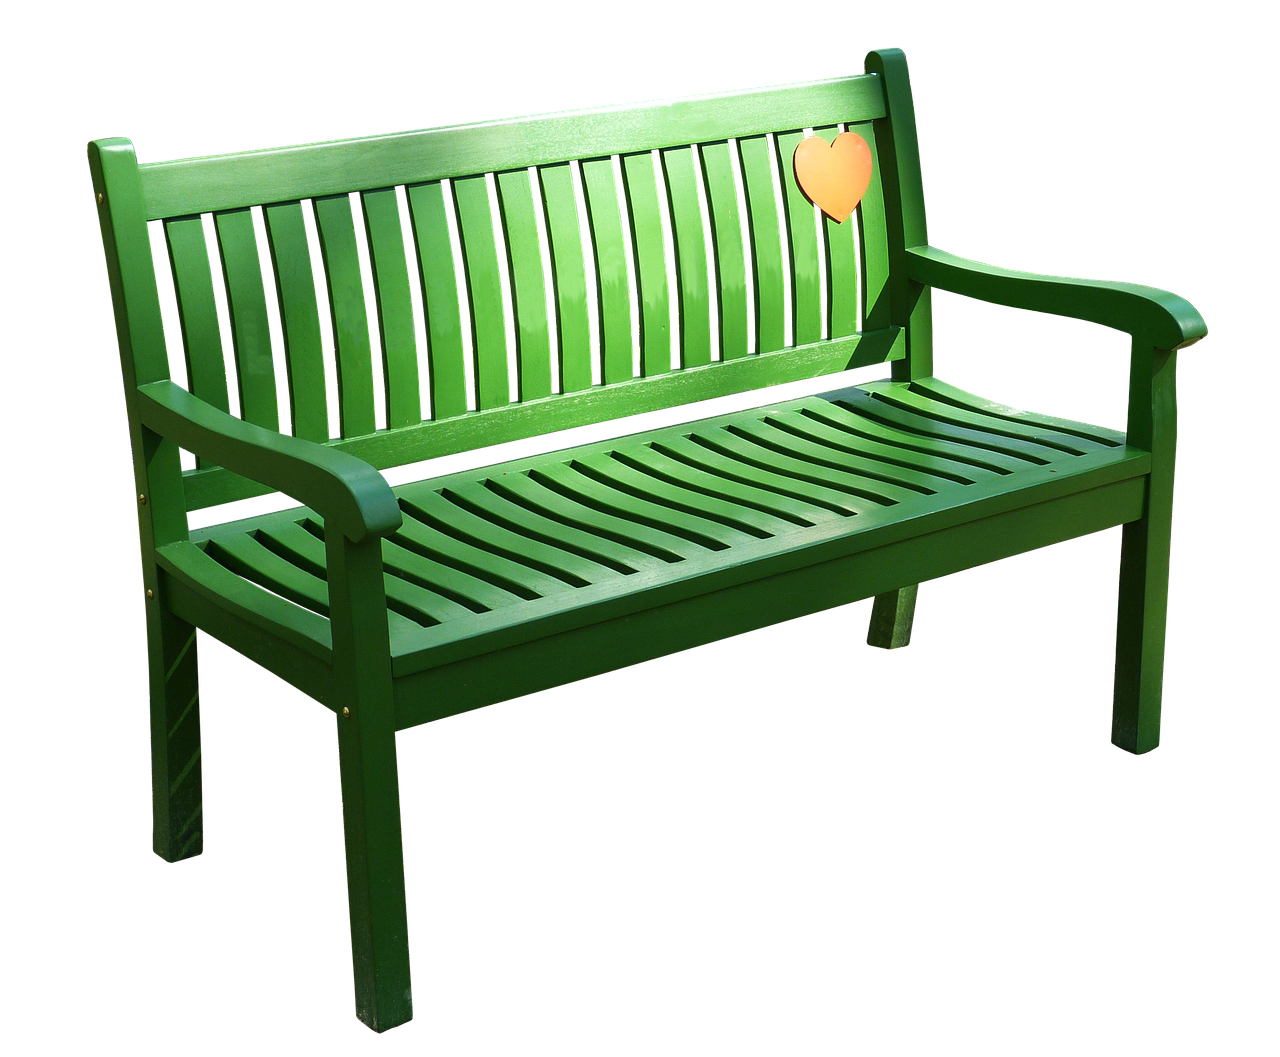 Sit bank. Bench [бенч] — скамейка. Скамейка «Green line». Скамья Keter патио. Скамья Садовая зеленая.